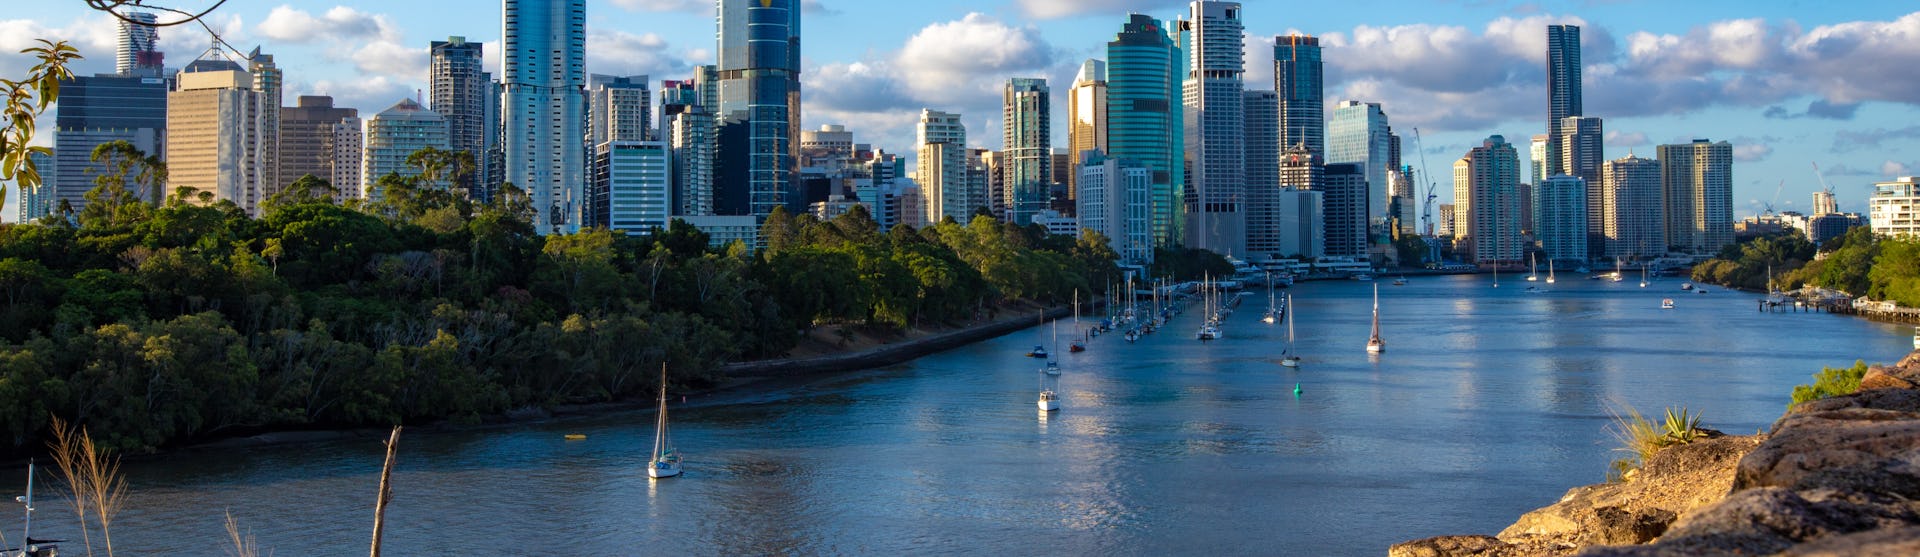 Bild på Brisbane med segelbåtar i vattnet, höghus och vacker natur.